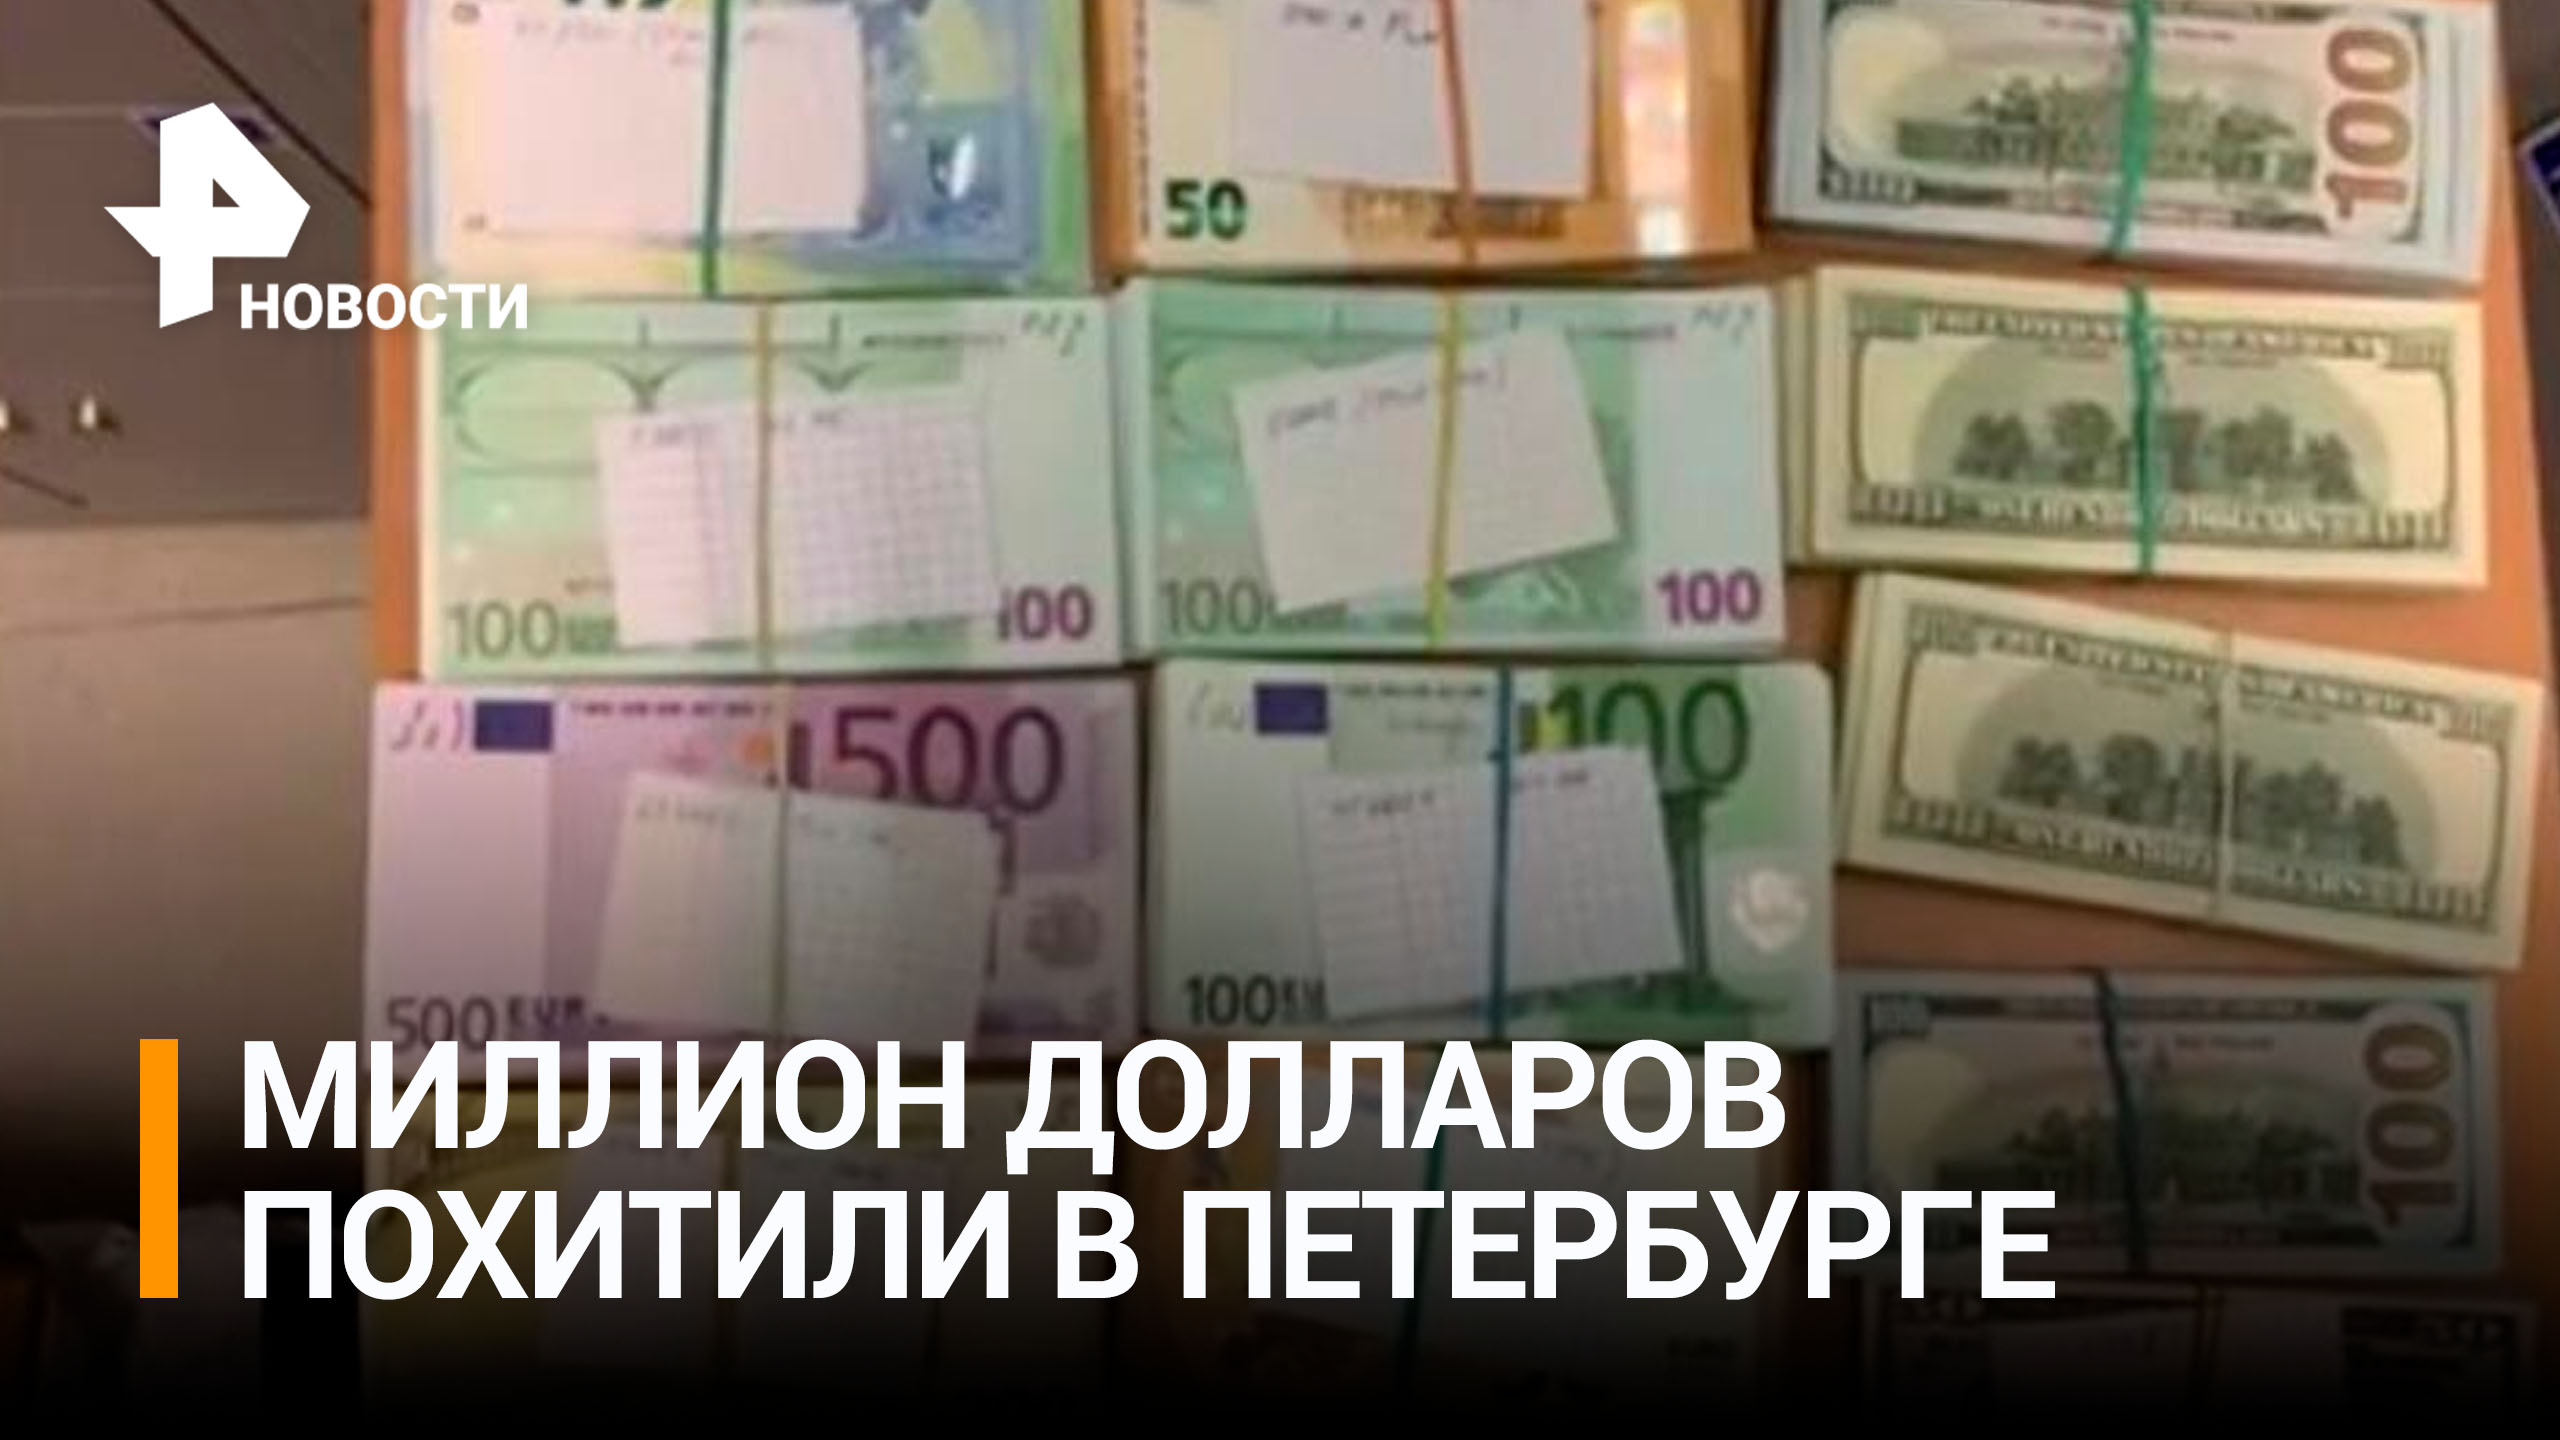 Из ячеек банка СИАБ в Петербурге похитили миллион долларов / РЕН Новости